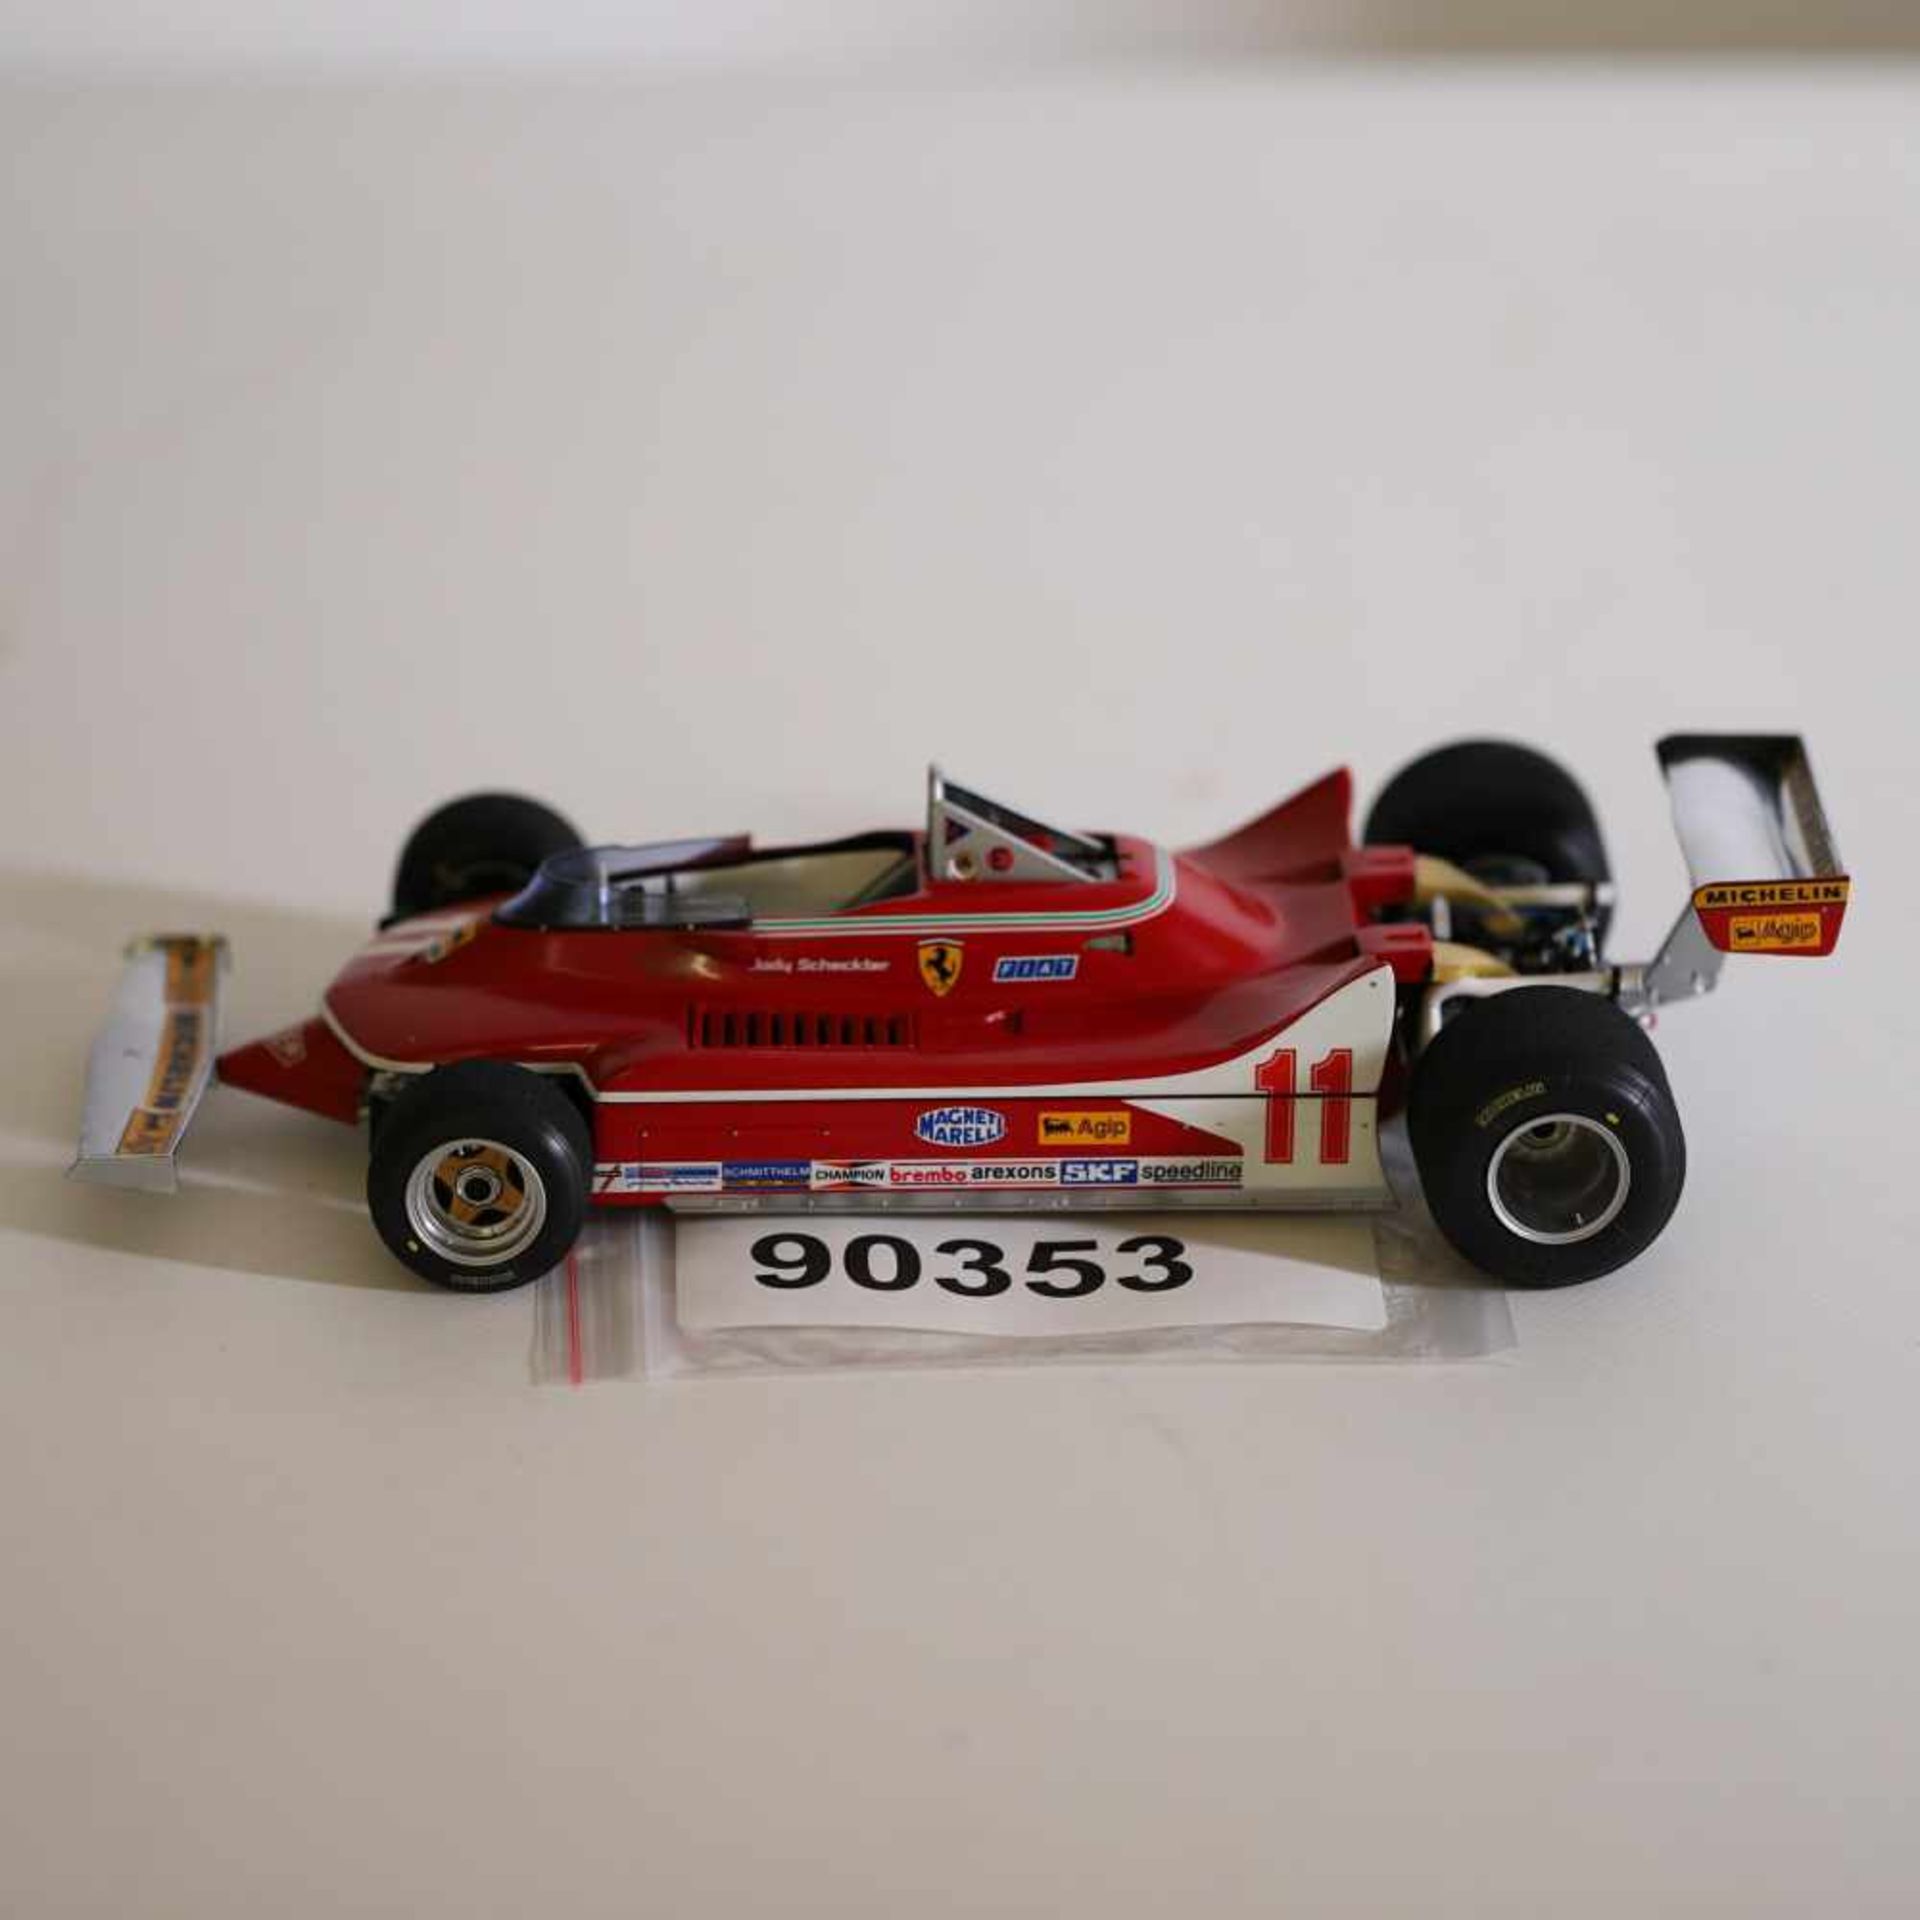 Exoto 1:18 Ferrari 312 T 4 Nr. 11, Jody Scheckter 1979, guter Zustand- - -20.00 % buyer's premium on